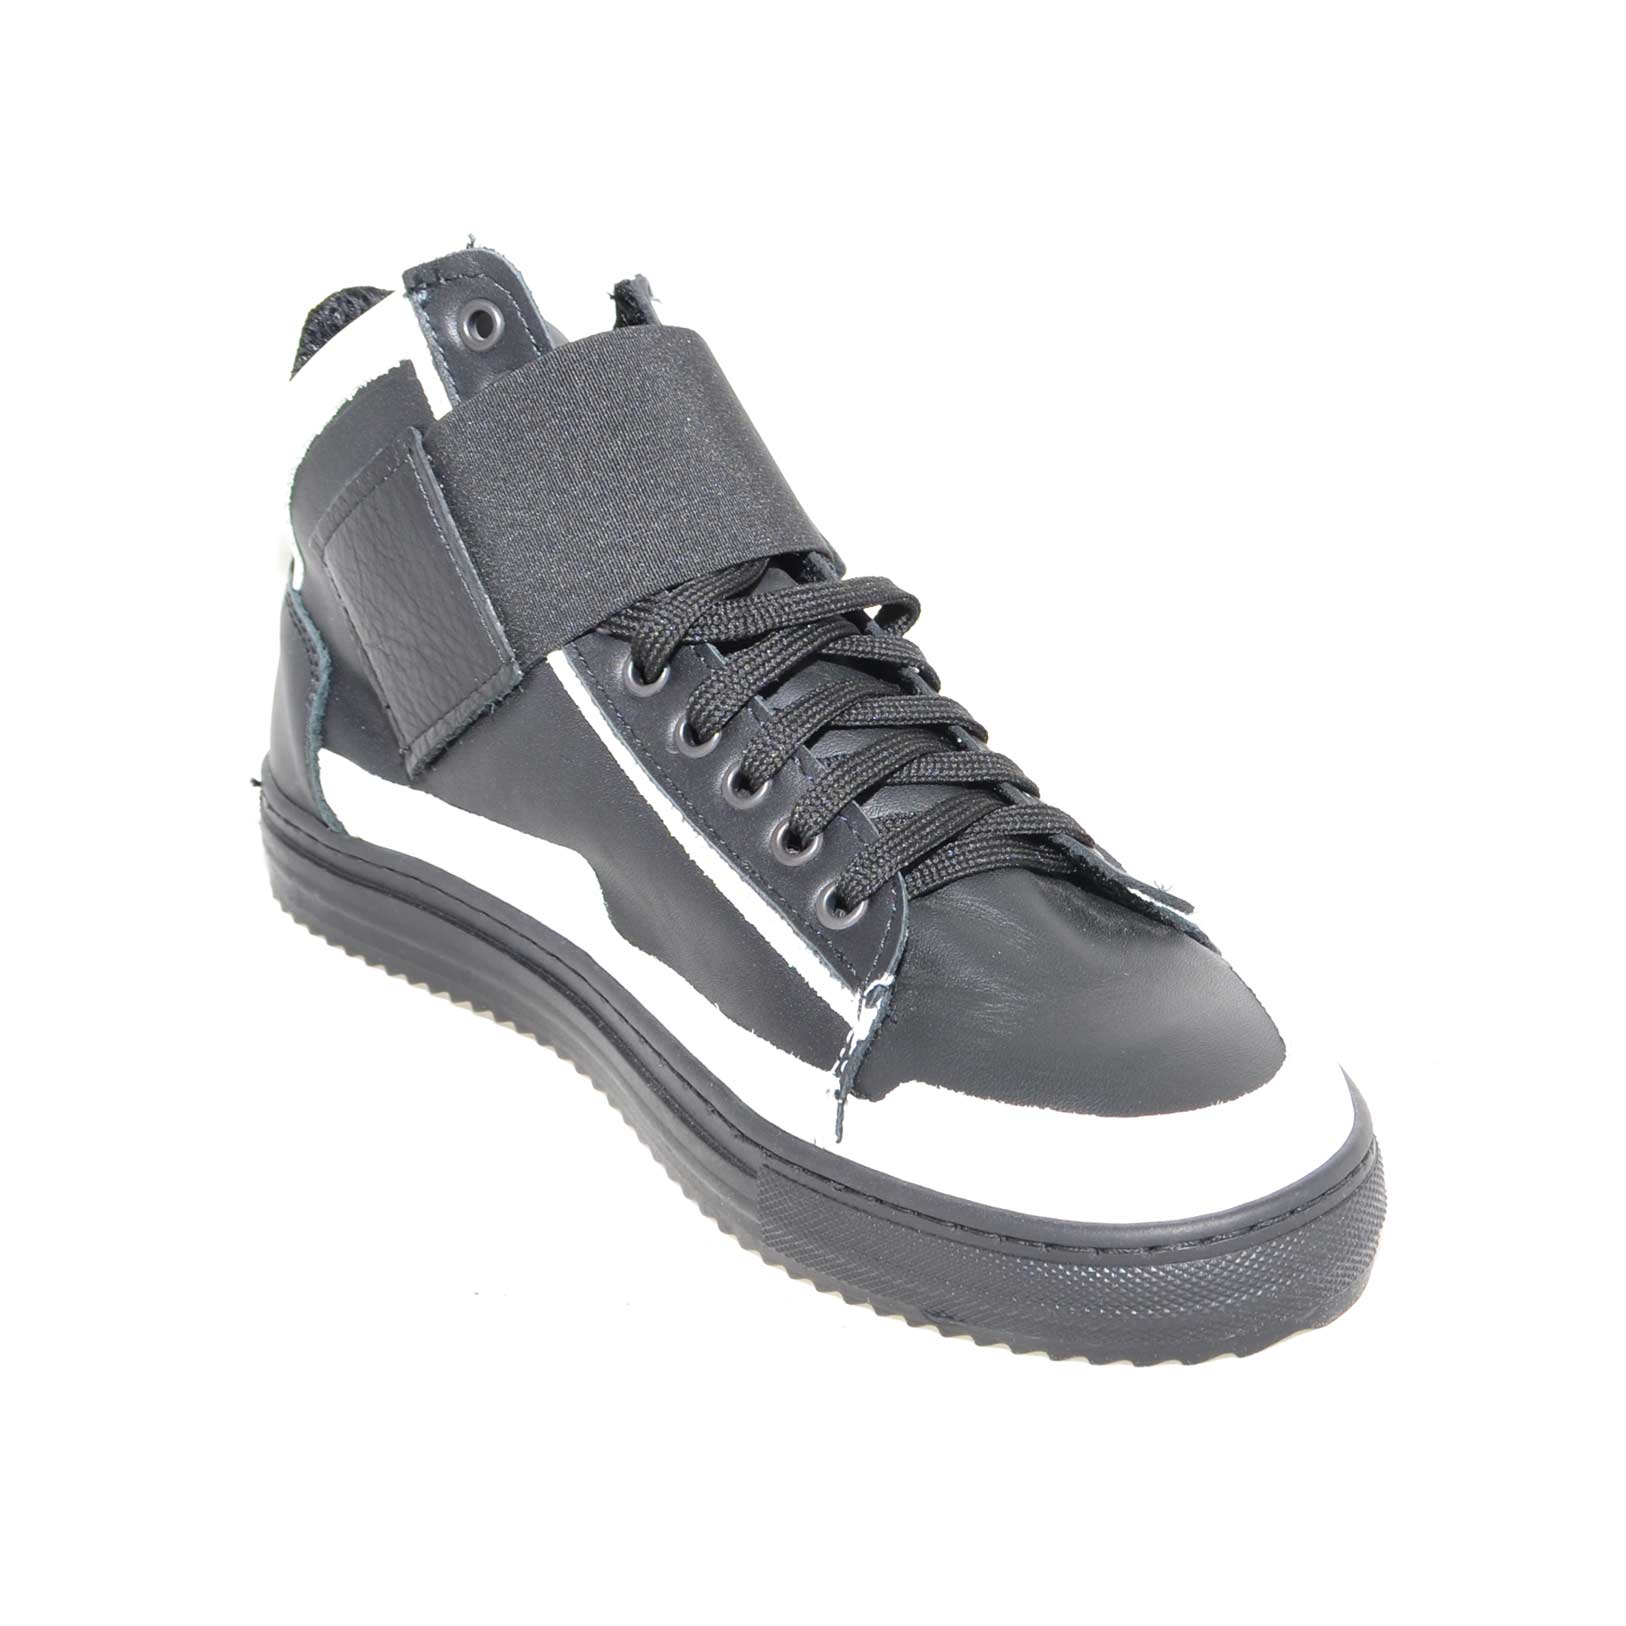 Sneakers alta art.8189 in vera pelle strappo ed elastico nero lacci made in italy fondo antiscivolo comfort.